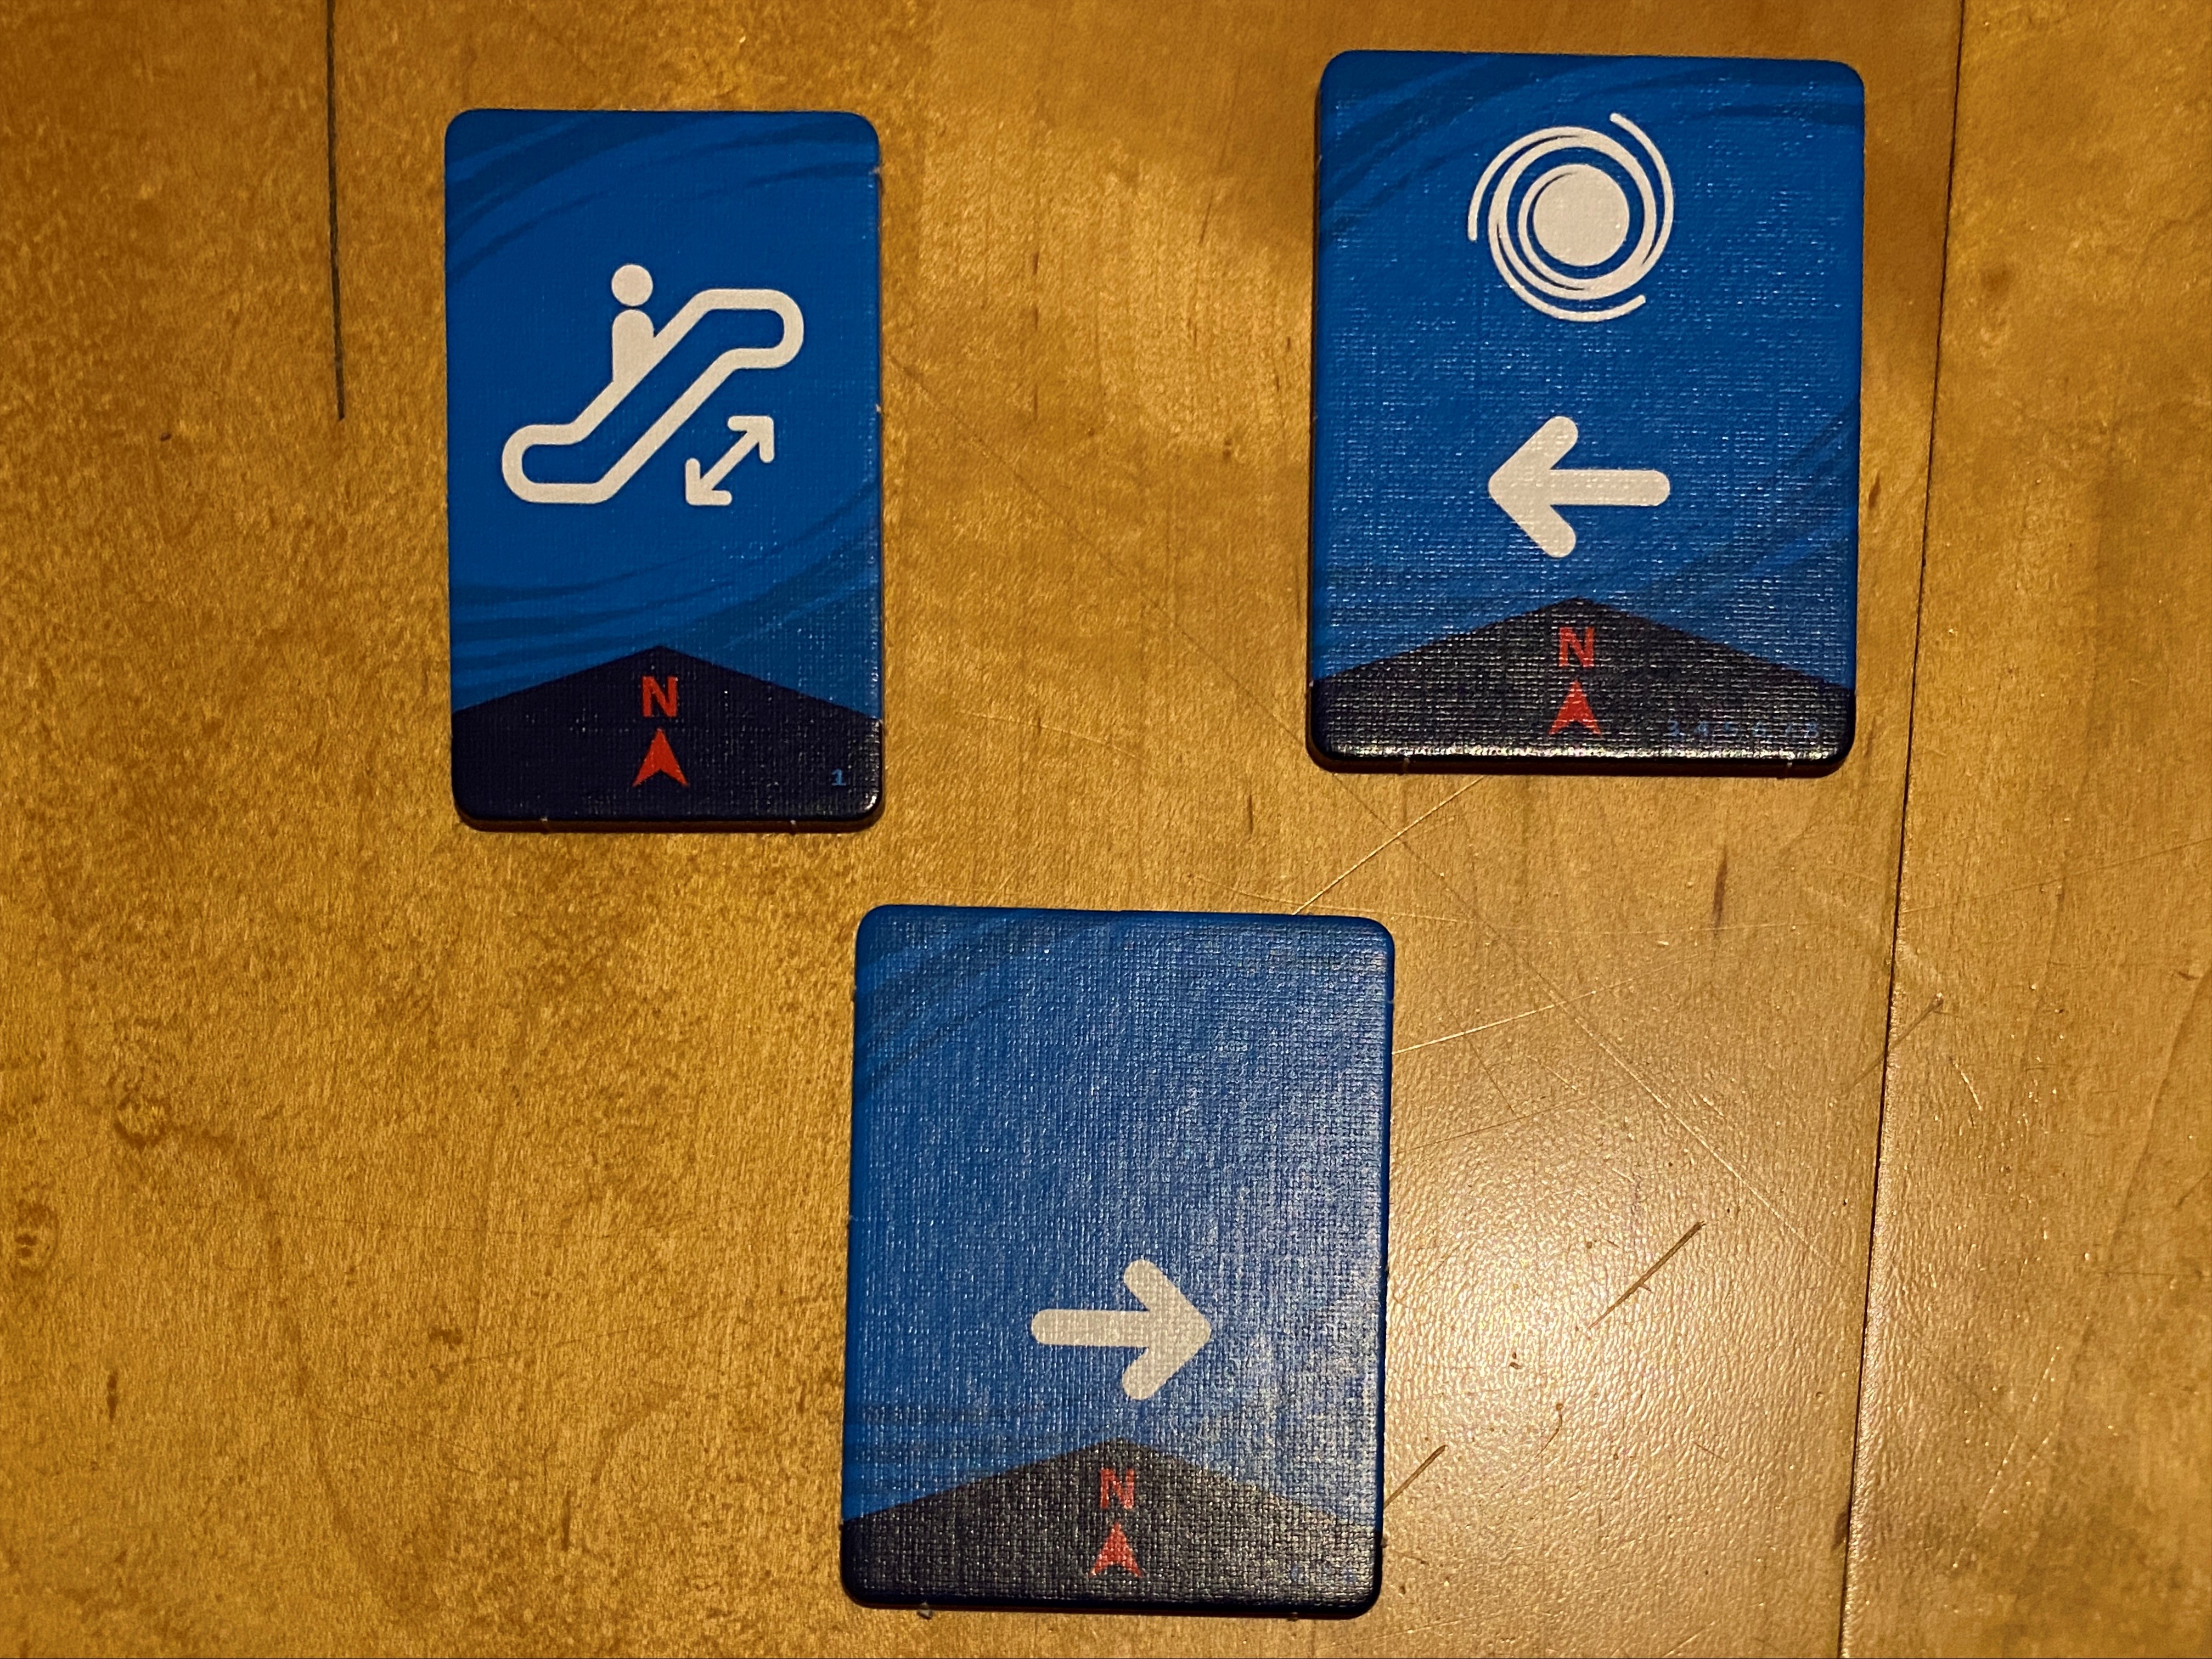 Jeder Spieler erhält eine Karte, die ihm ein bis zwei Fähigkeiten gibt, die er für jeden Helden nutzen kann. Die Karte links oben erlaubt es einem Spieler z.B., die Helden über Rolltreppen zu schicken und der Besitzer der unteren Karte kann die Helden nach rechts bewegen.